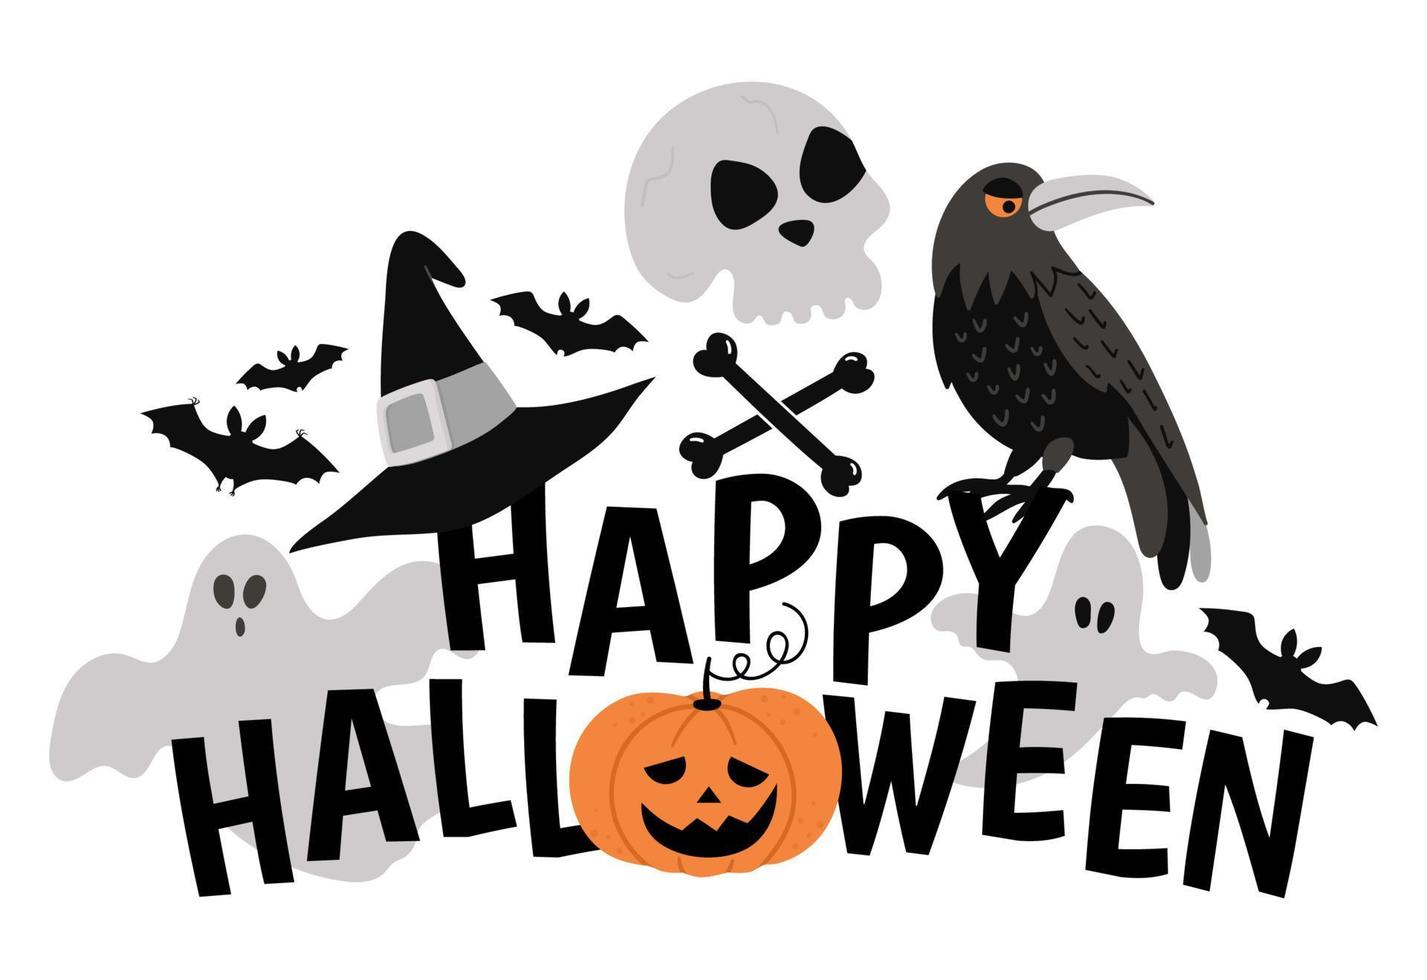 vector composición de halloween con texto, fantasma, cuervo, cráneo, sombrero de bruja, murciélagos. divertido diseño de fondo de vacaciones de otoño para pancartas, carteles, invitaciones. plantilla de tarjeta con elementos de miedo